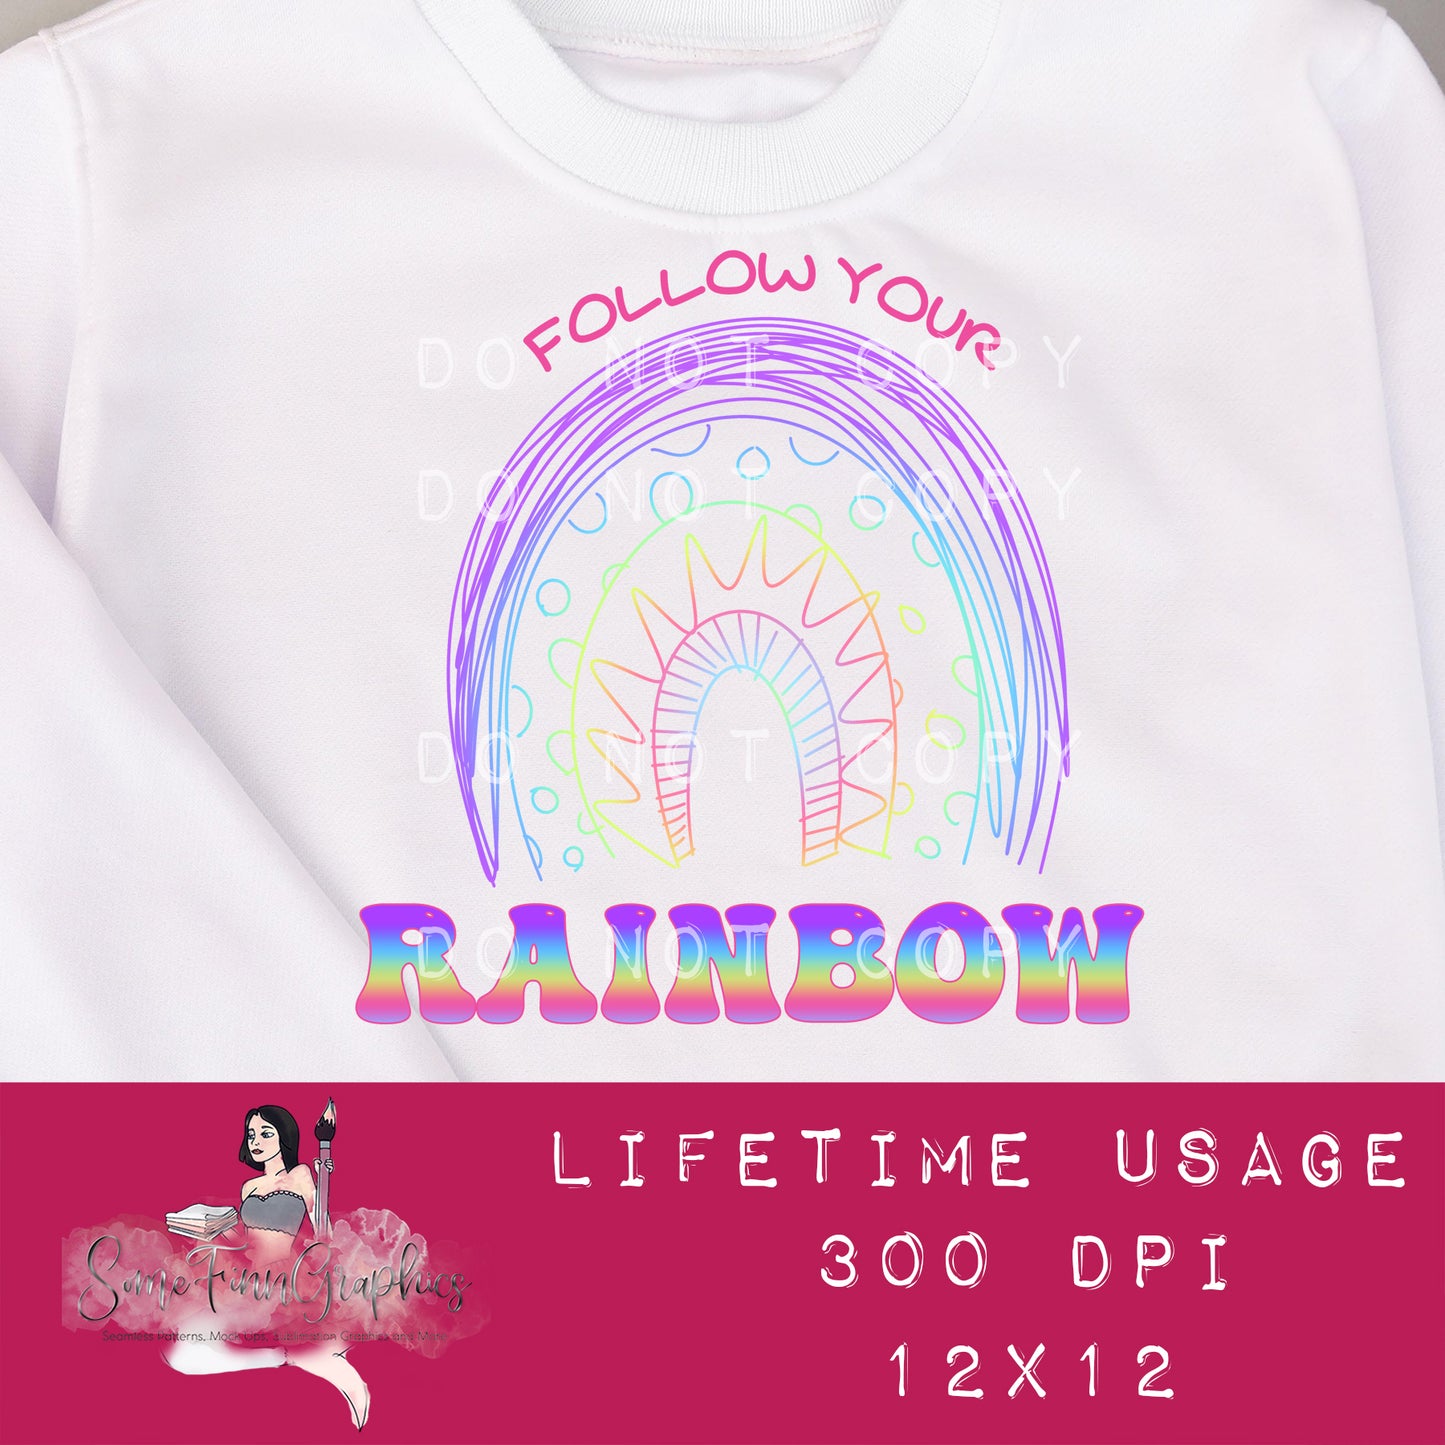 Follow Your Rainbow